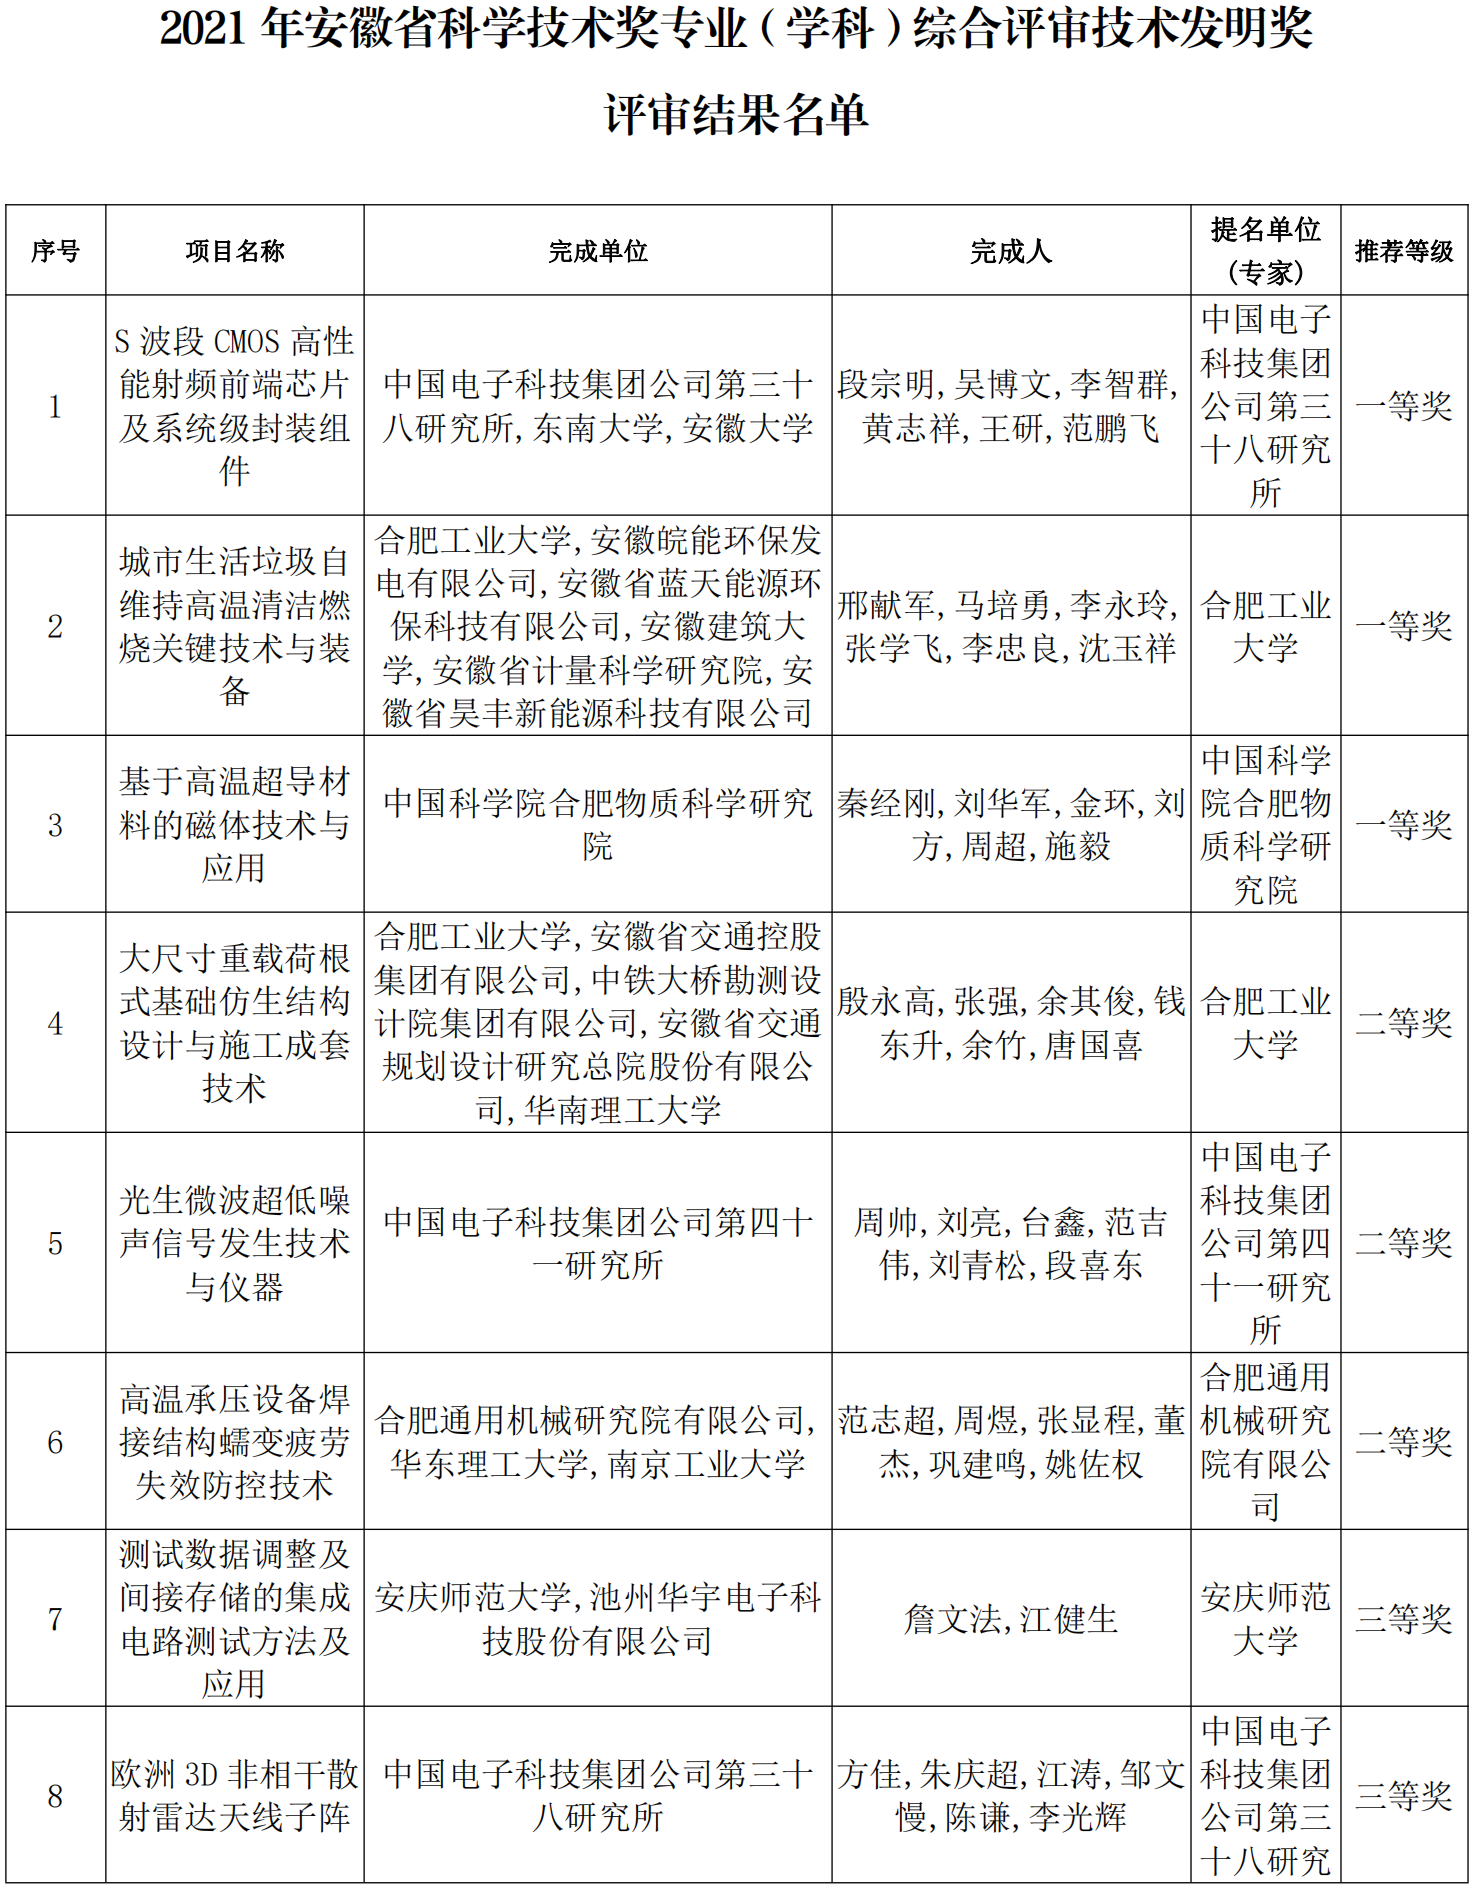 BOB体育:芜湖伊莱特电气有限公司企业技术中心招聘简章(图)